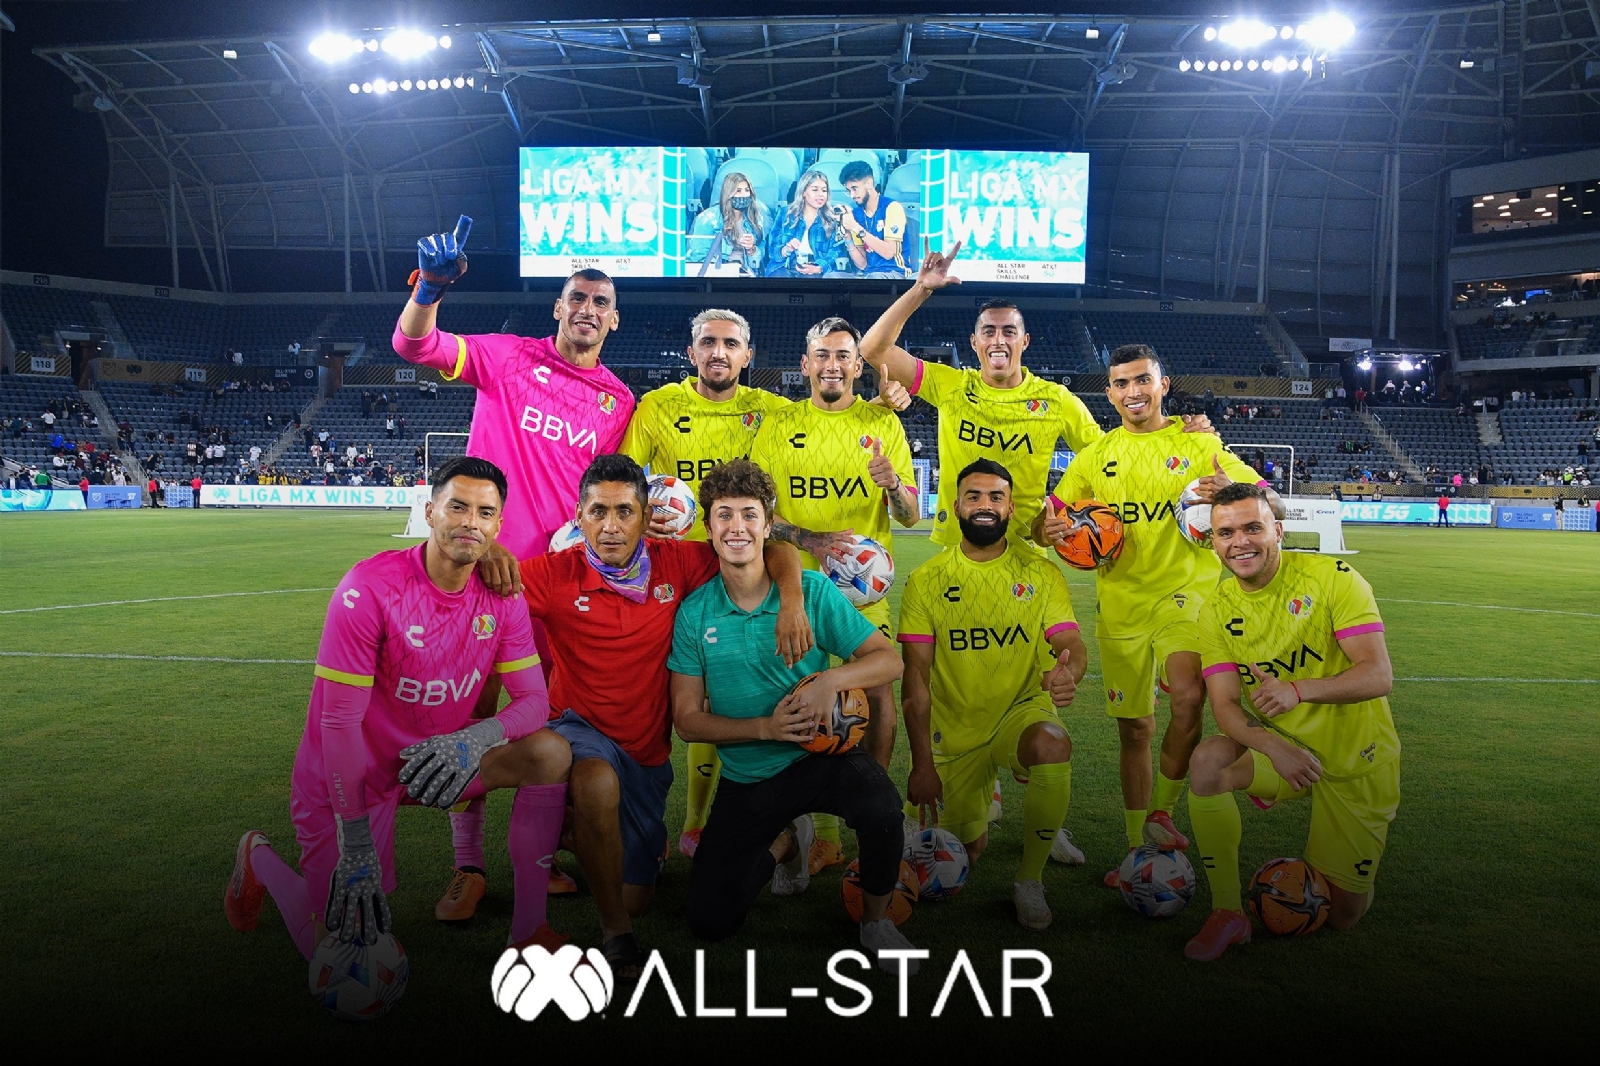 El primer All Star Game 2021 entre la Liga MX y la MLS será este miércoles 25 de agosto